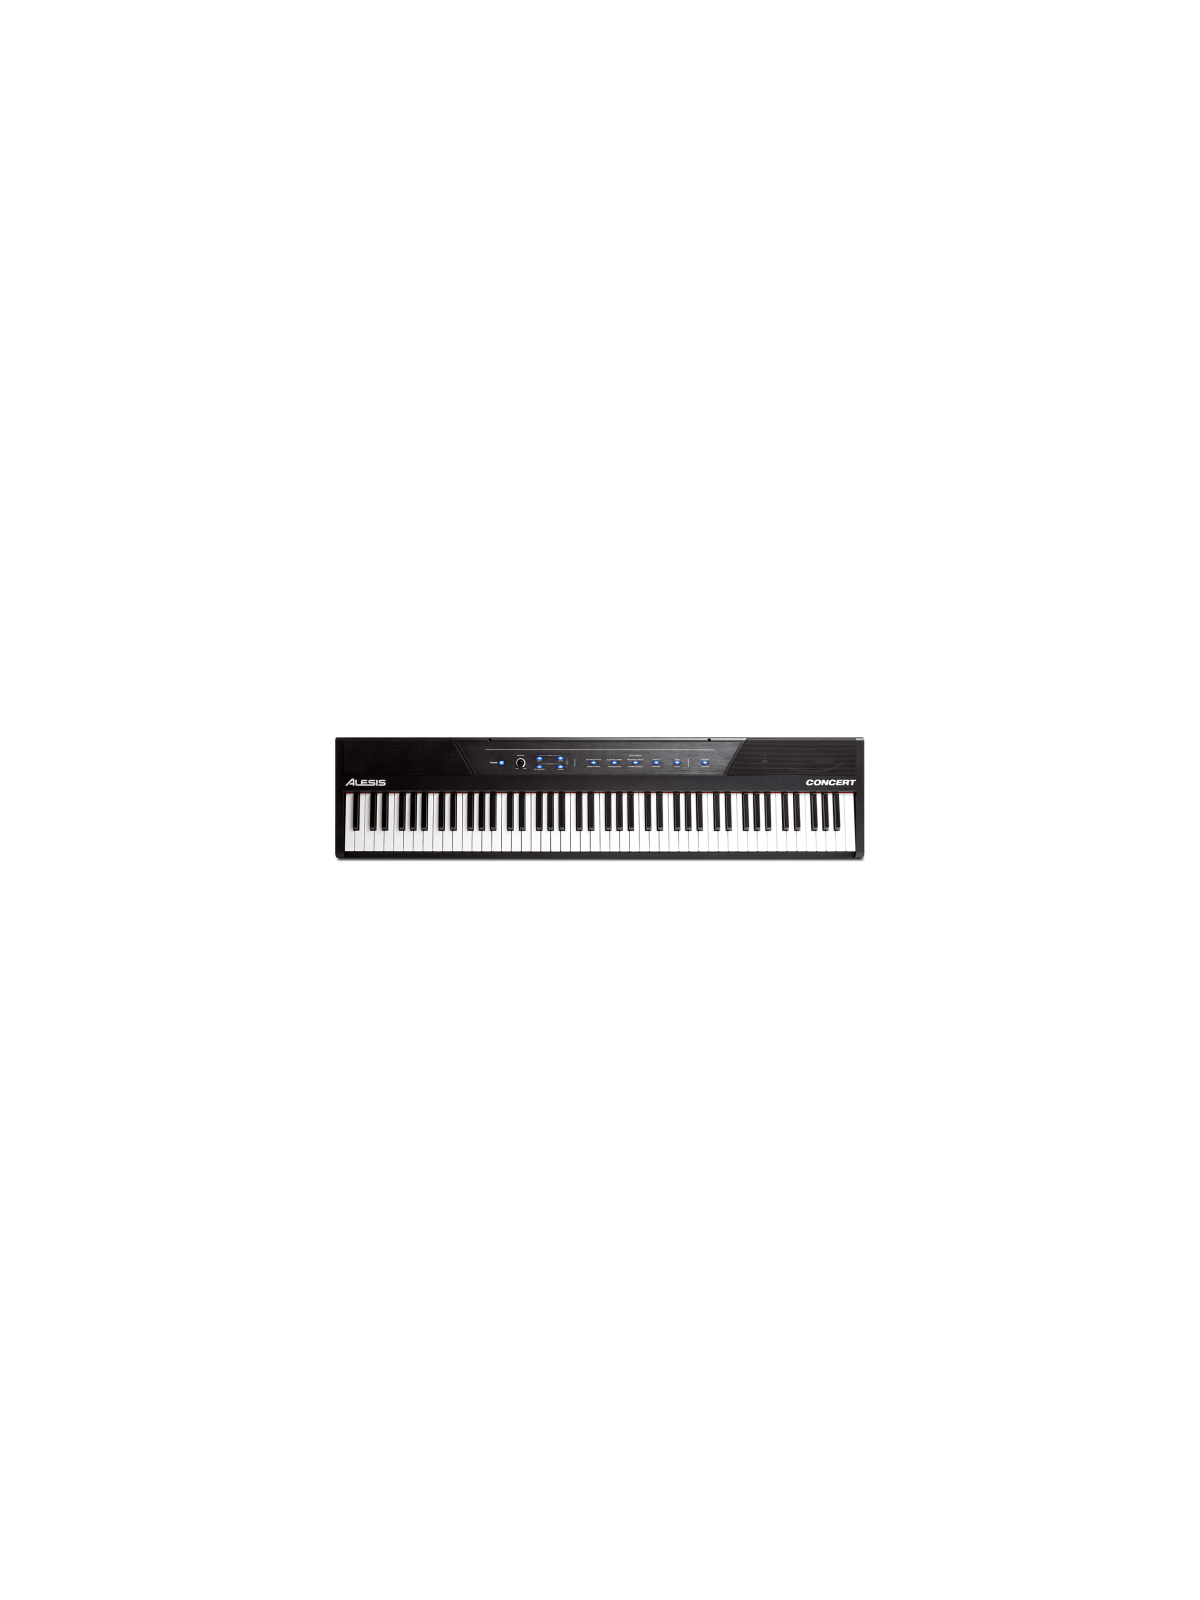 Alesis - CONCERT 88 notes piano